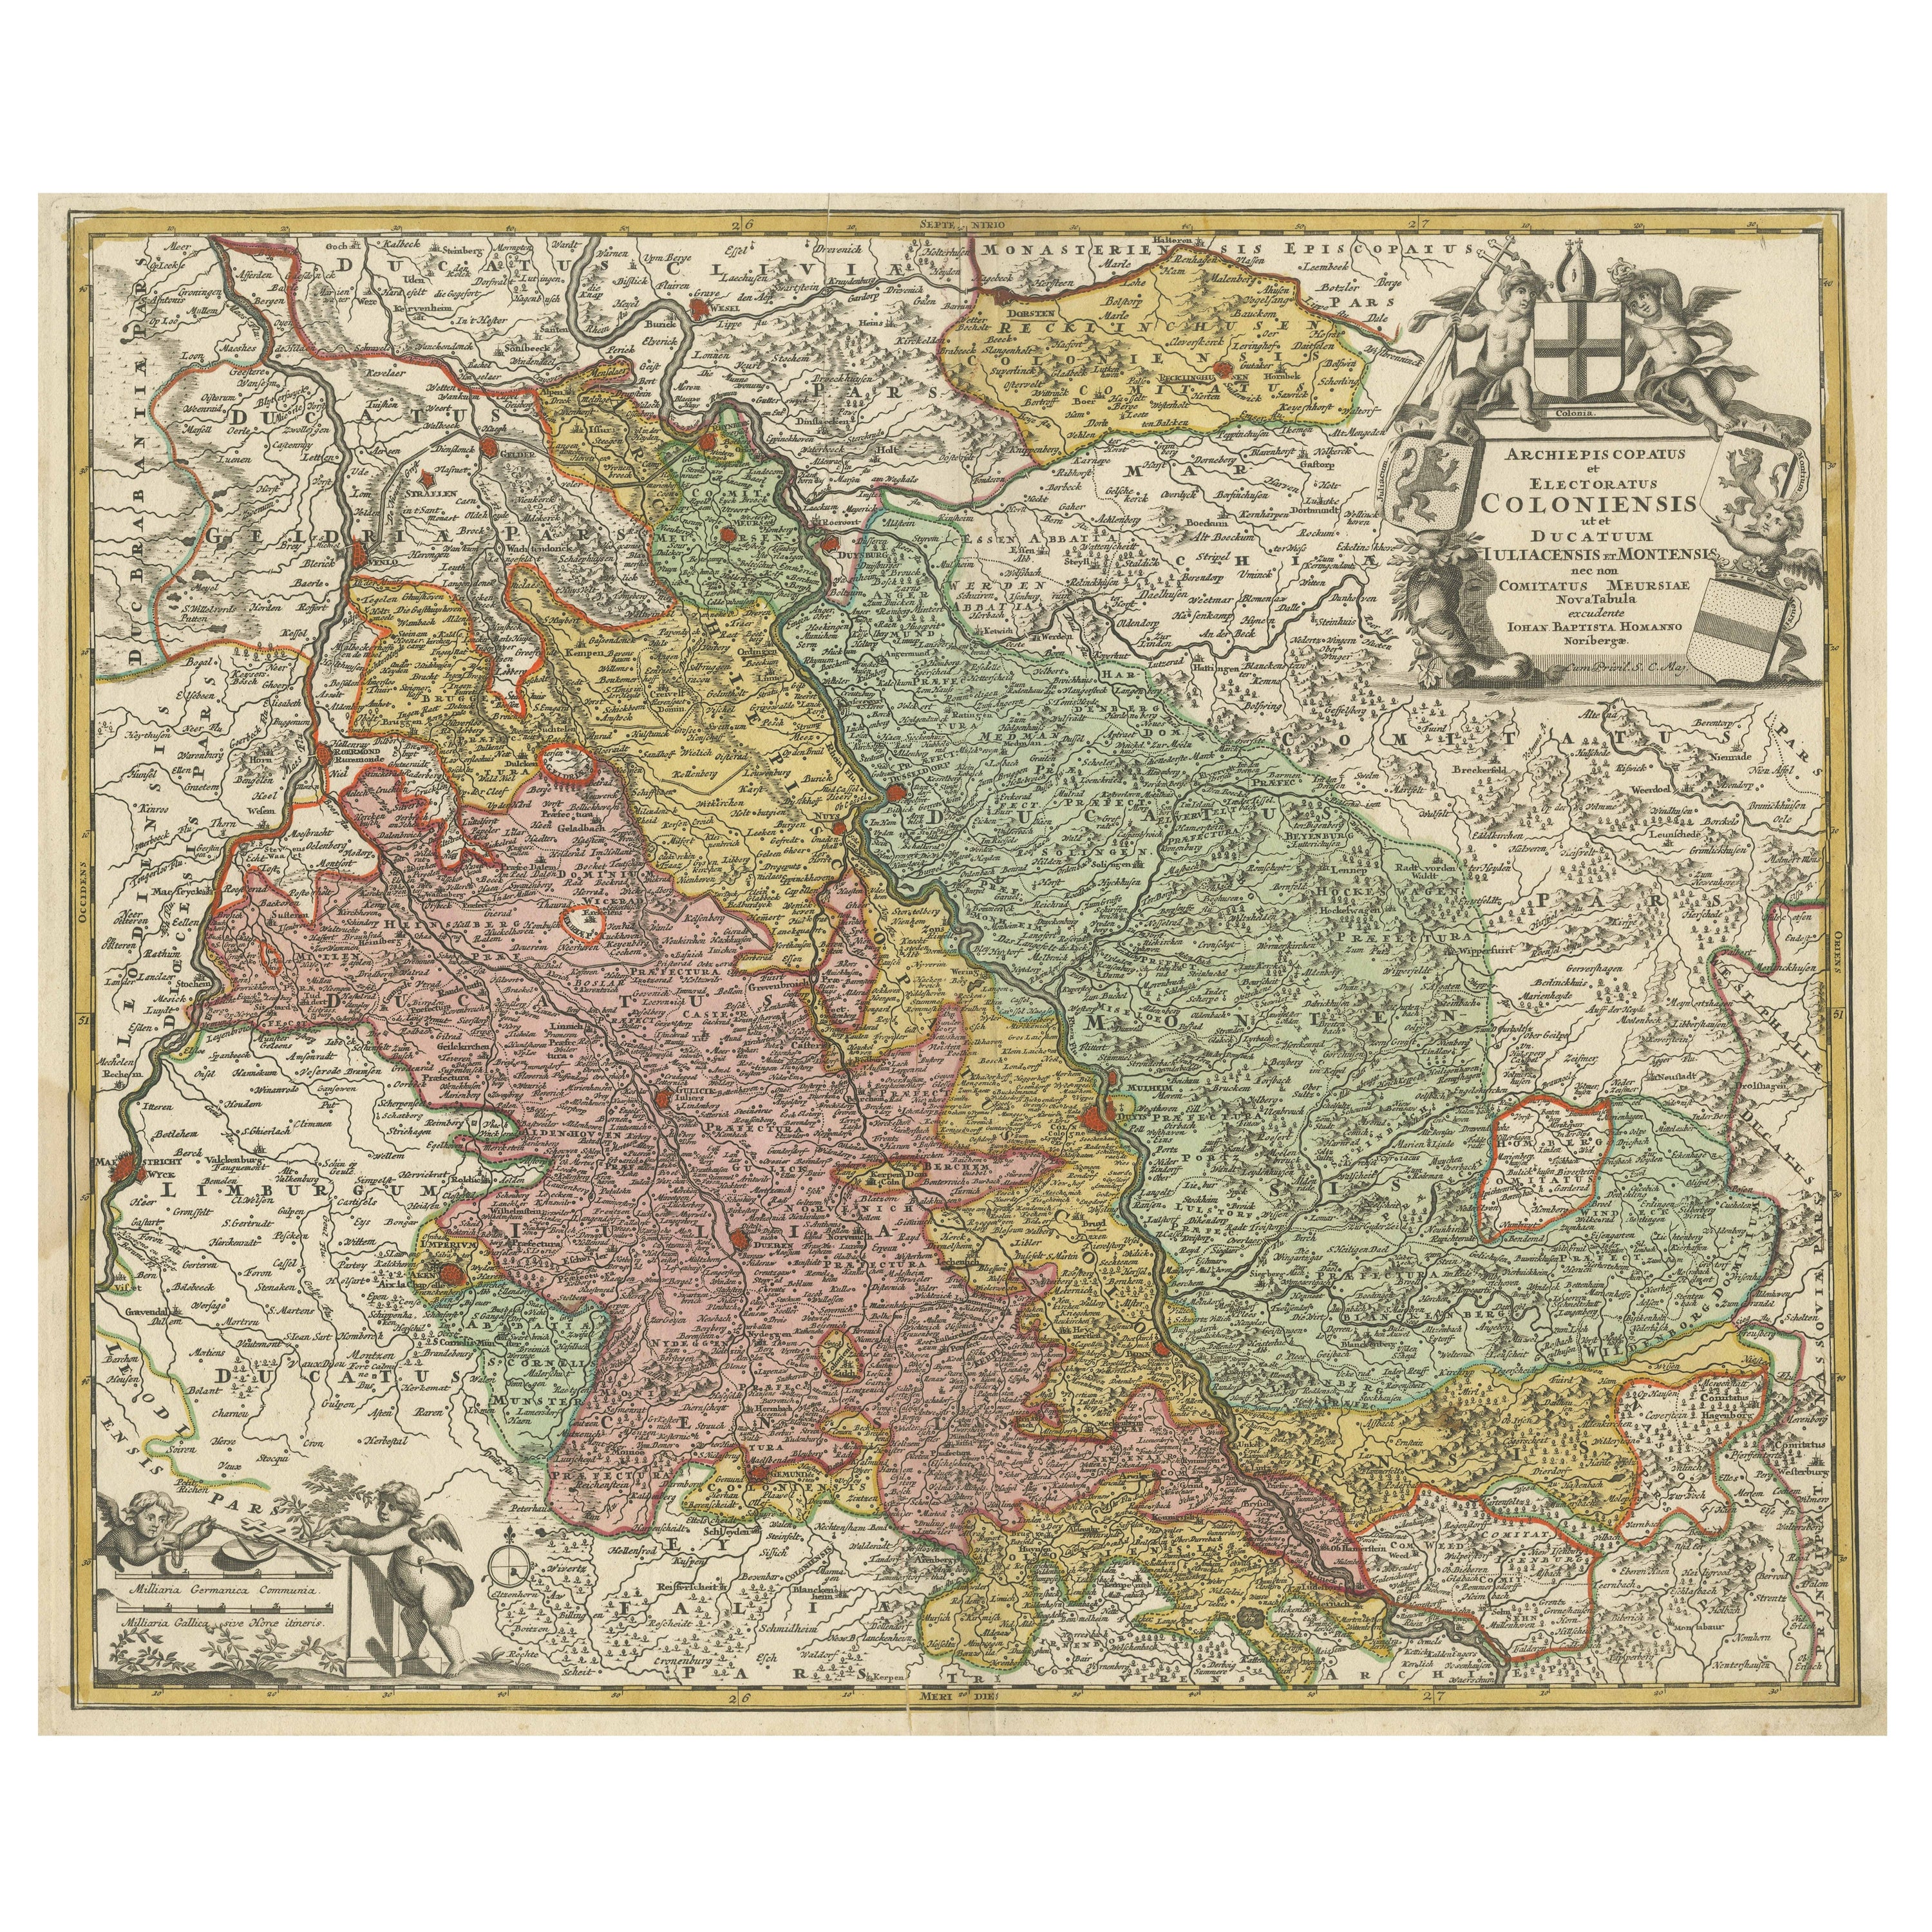 Carte ancienne du Rhin centrée sur la Cologne, Allemagne, avec coloration d'origine